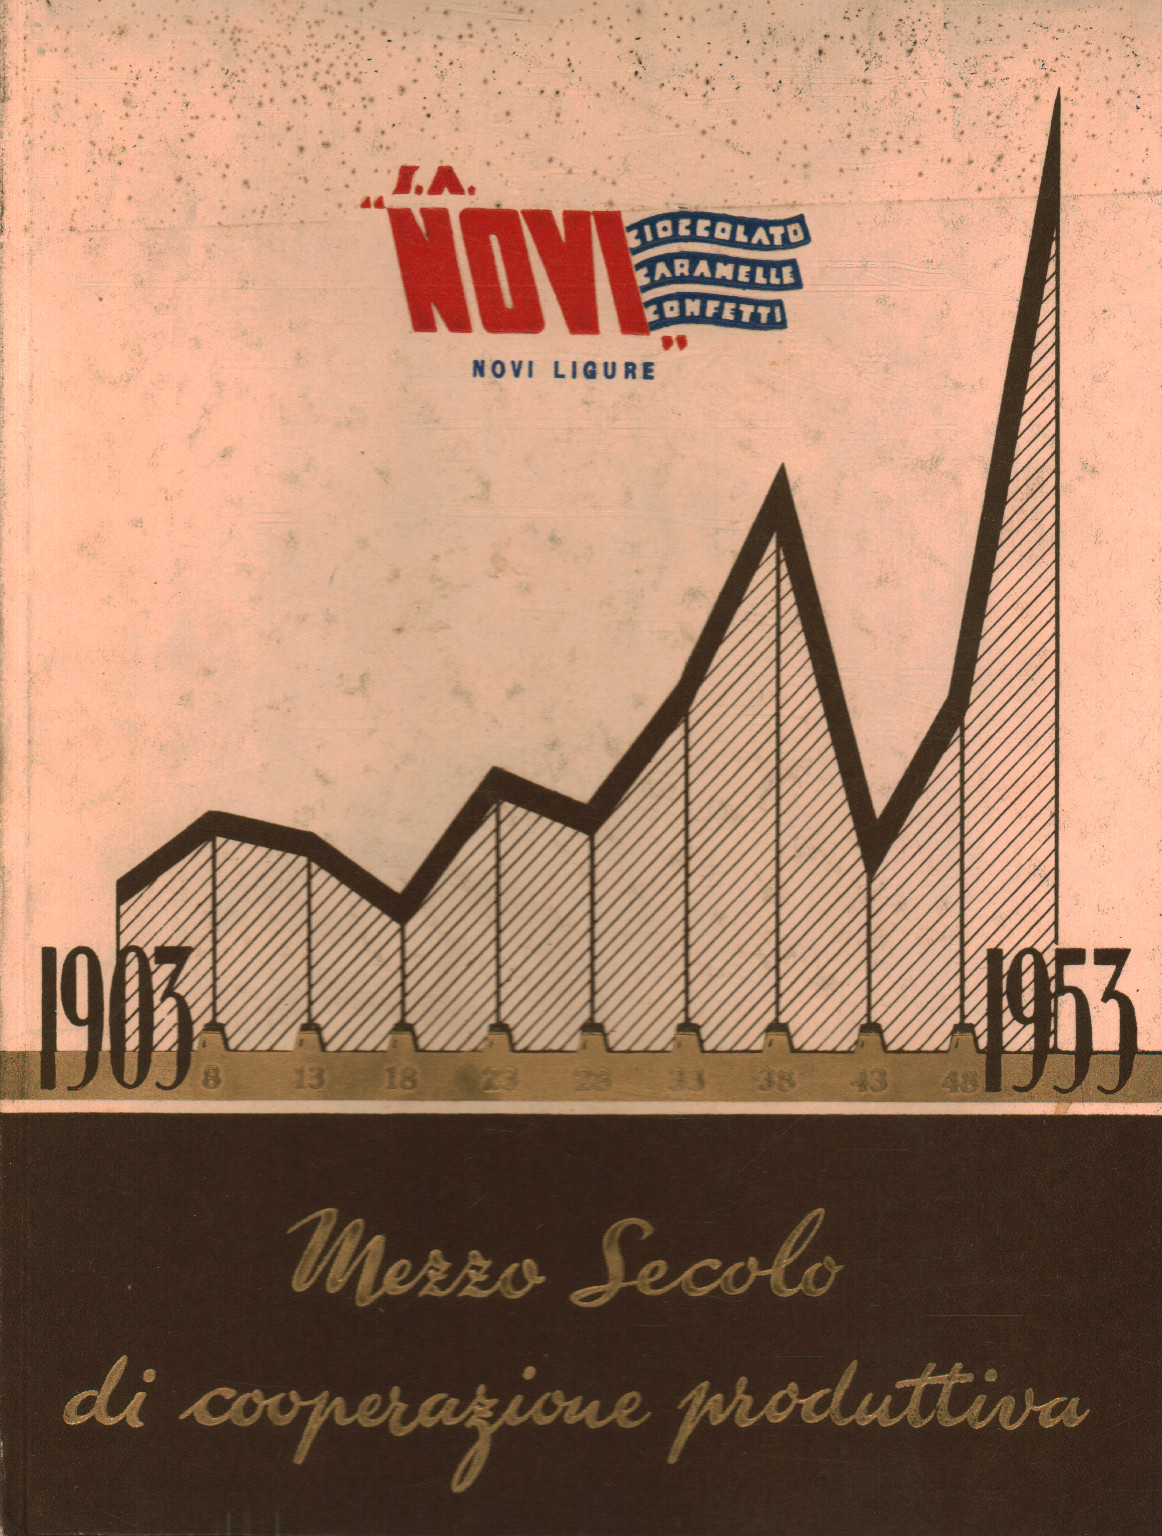 1903-1953 Ein halbes Jahrhundert produktiver Zusammenarbeit, s.a.